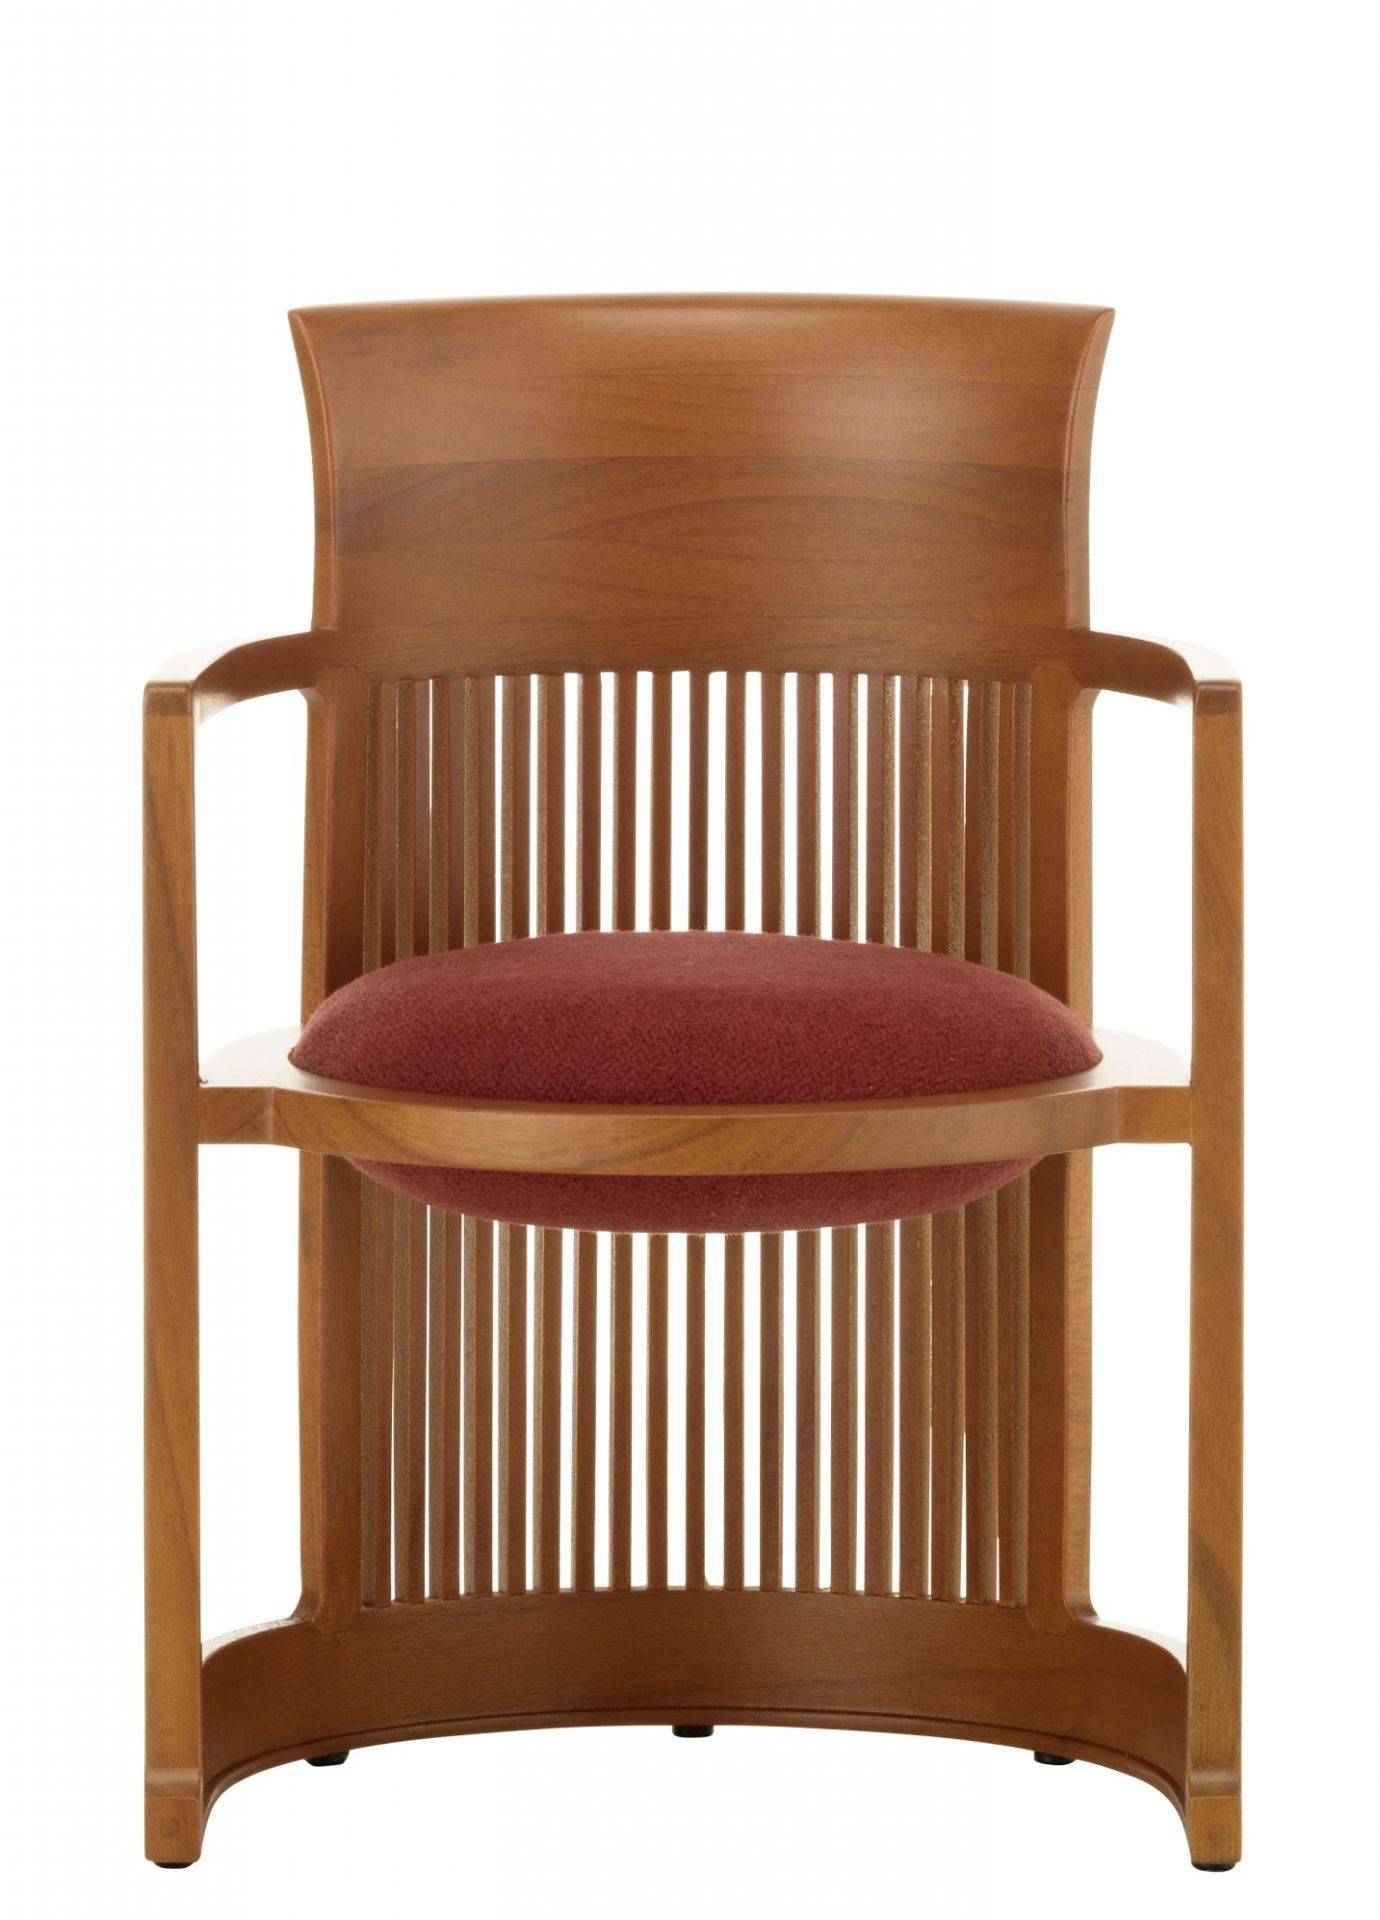 Barrel Chair Miniatur Chaise Vitra